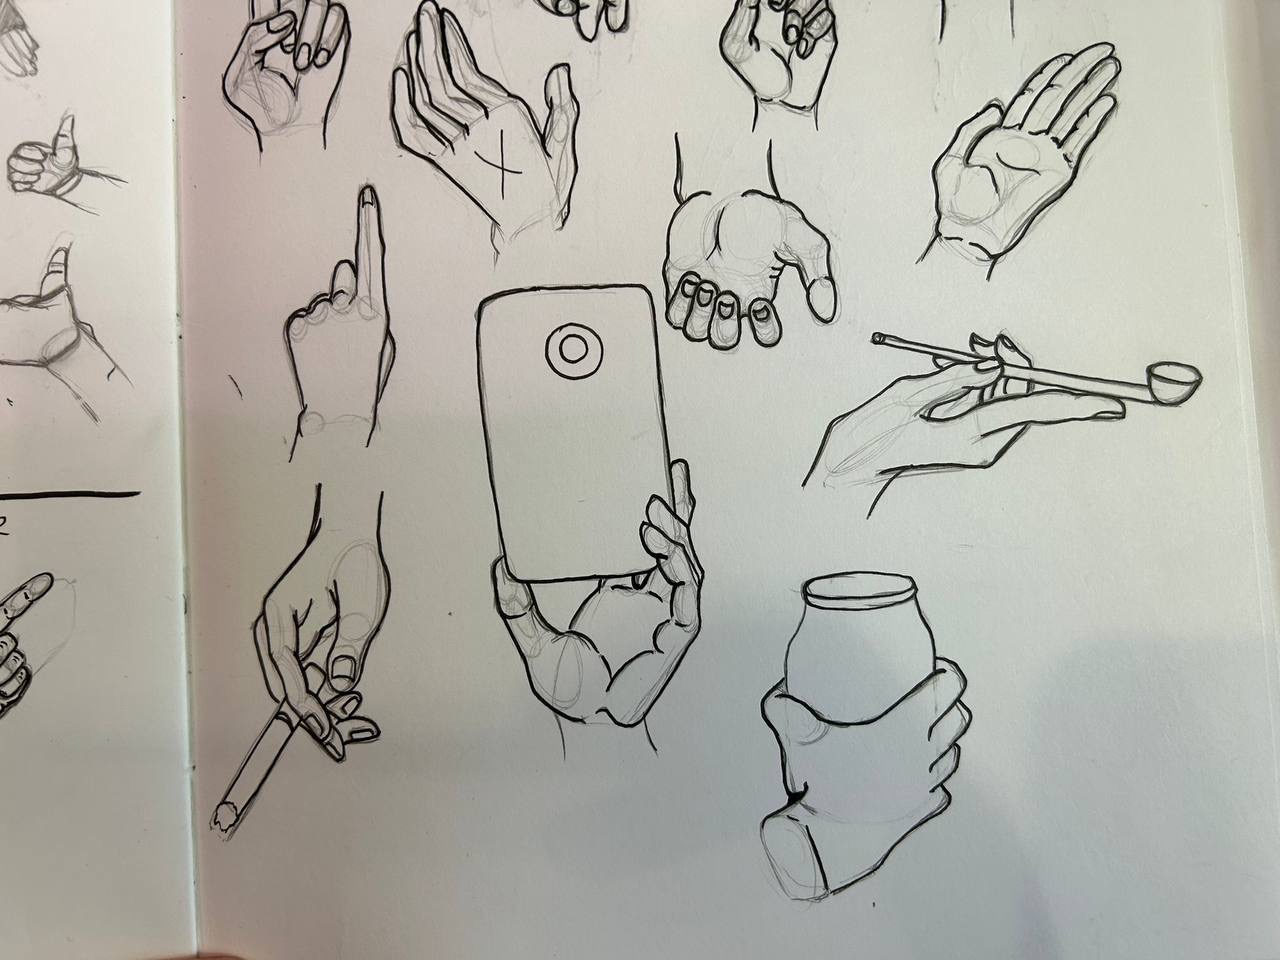 DannyBoy - Some hand practices #hands #drawing #sketch #practice #art #poses  #progress #clipstudiopaint #wacom #fundamentals | Facebook